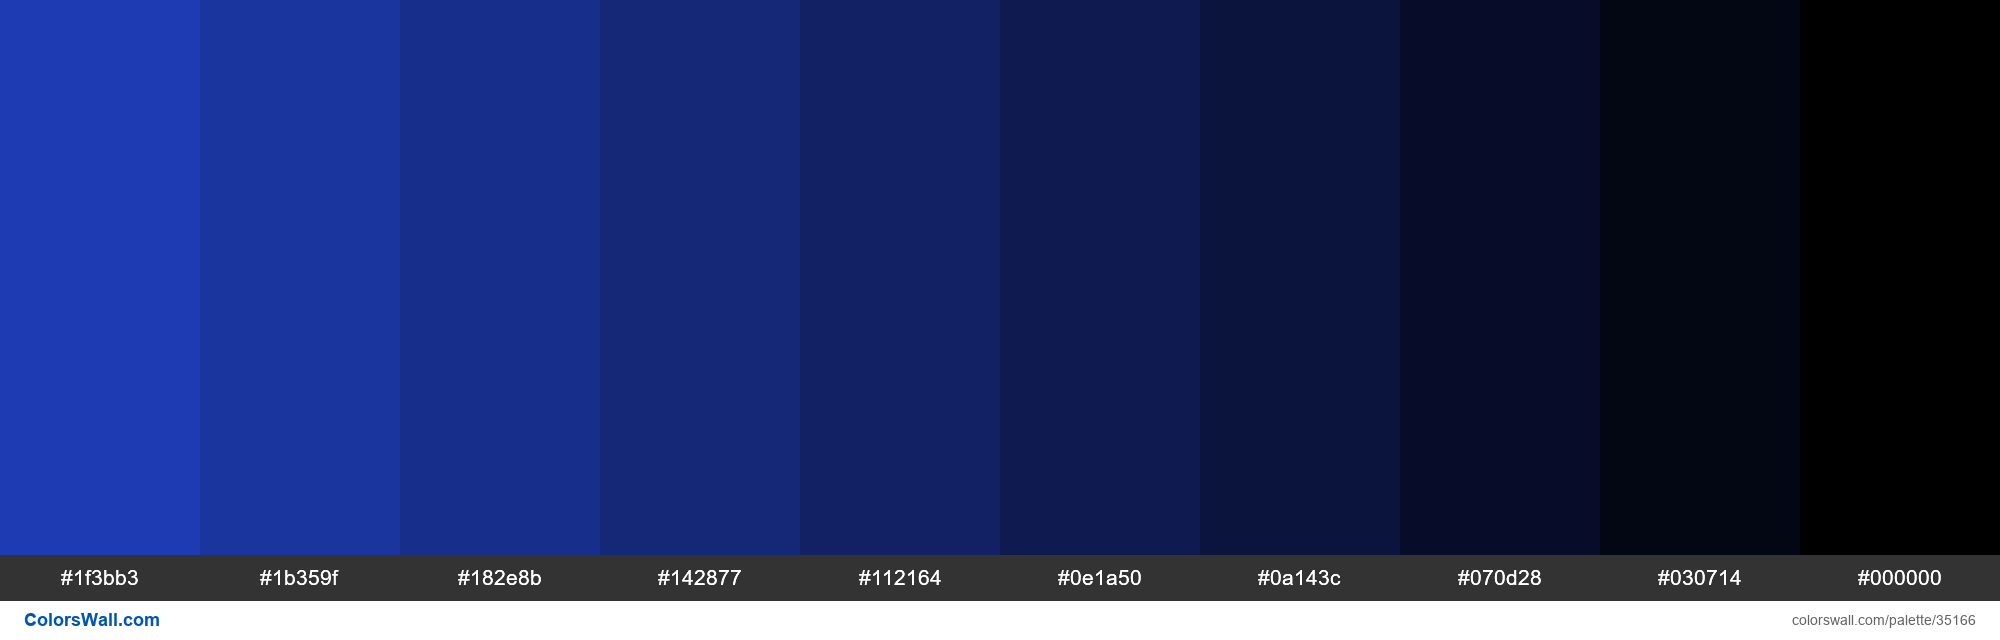 Shades XKCD Color blue blue #2242c7 hex colors palette - ColorsWall